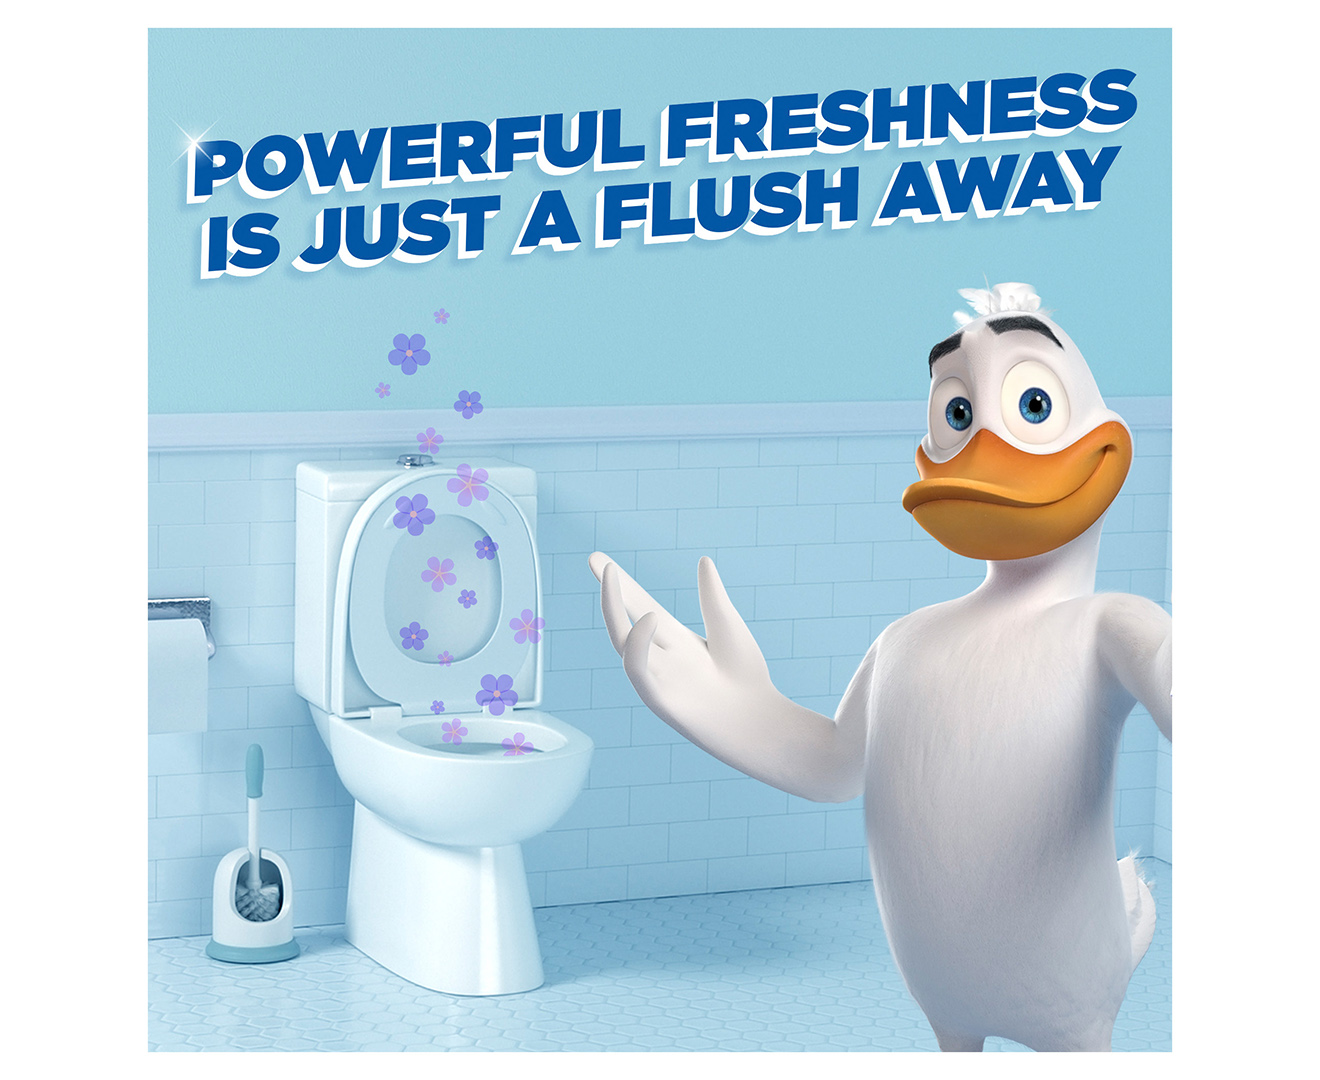 Duck Fresh Discs Advert 